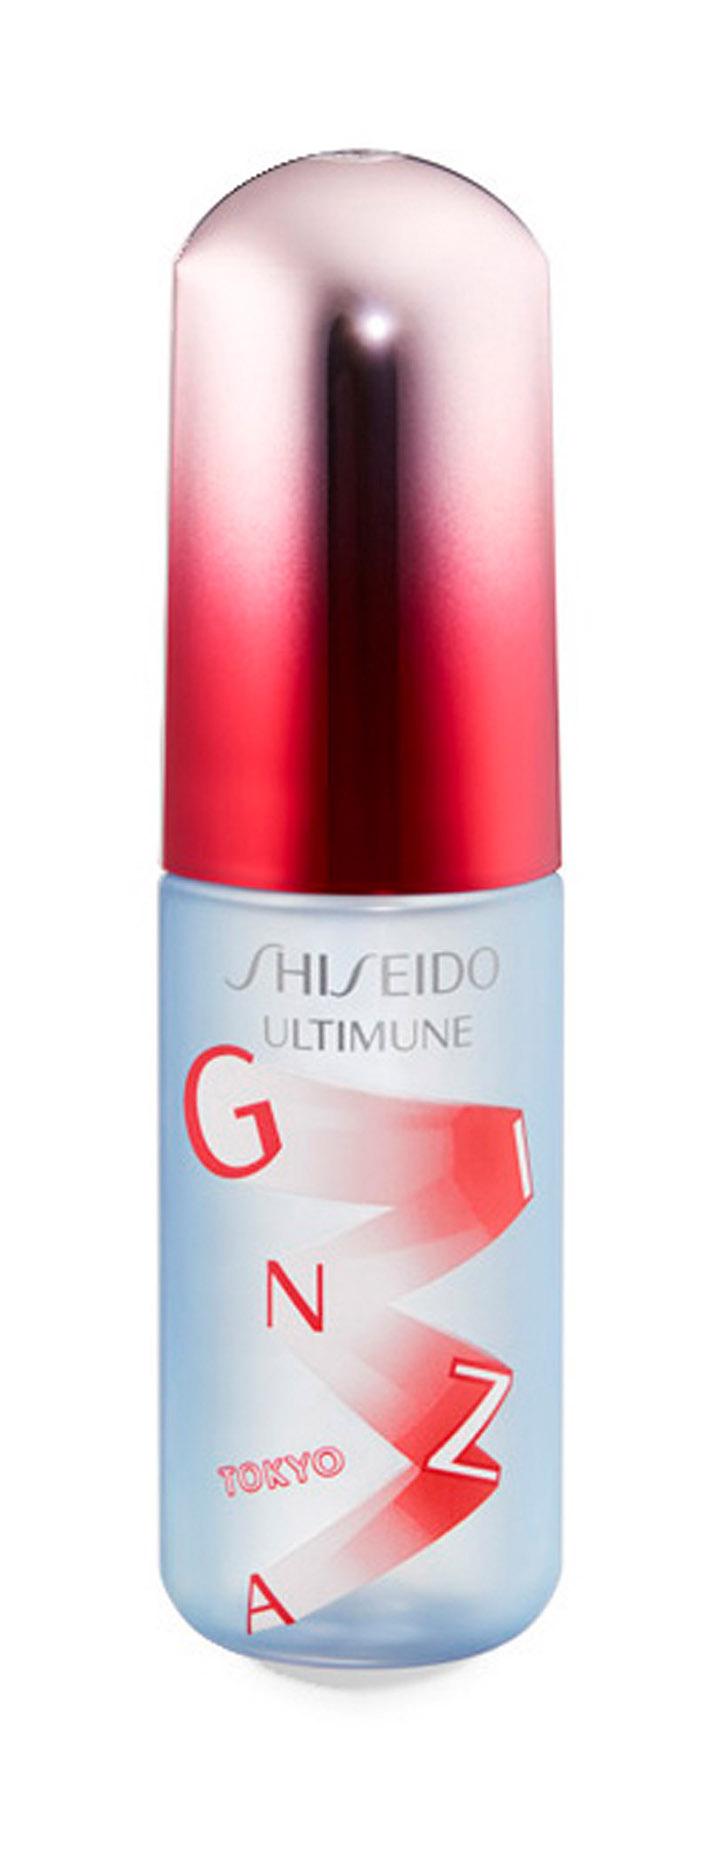 Освежающий мист для лица Shiseido Ultimune Defense Refresh Mist Duo защитный, 60 мл stadler form косметическое эфирное масло refresh для увлажнителя воздуха и бани для лица и тела 10